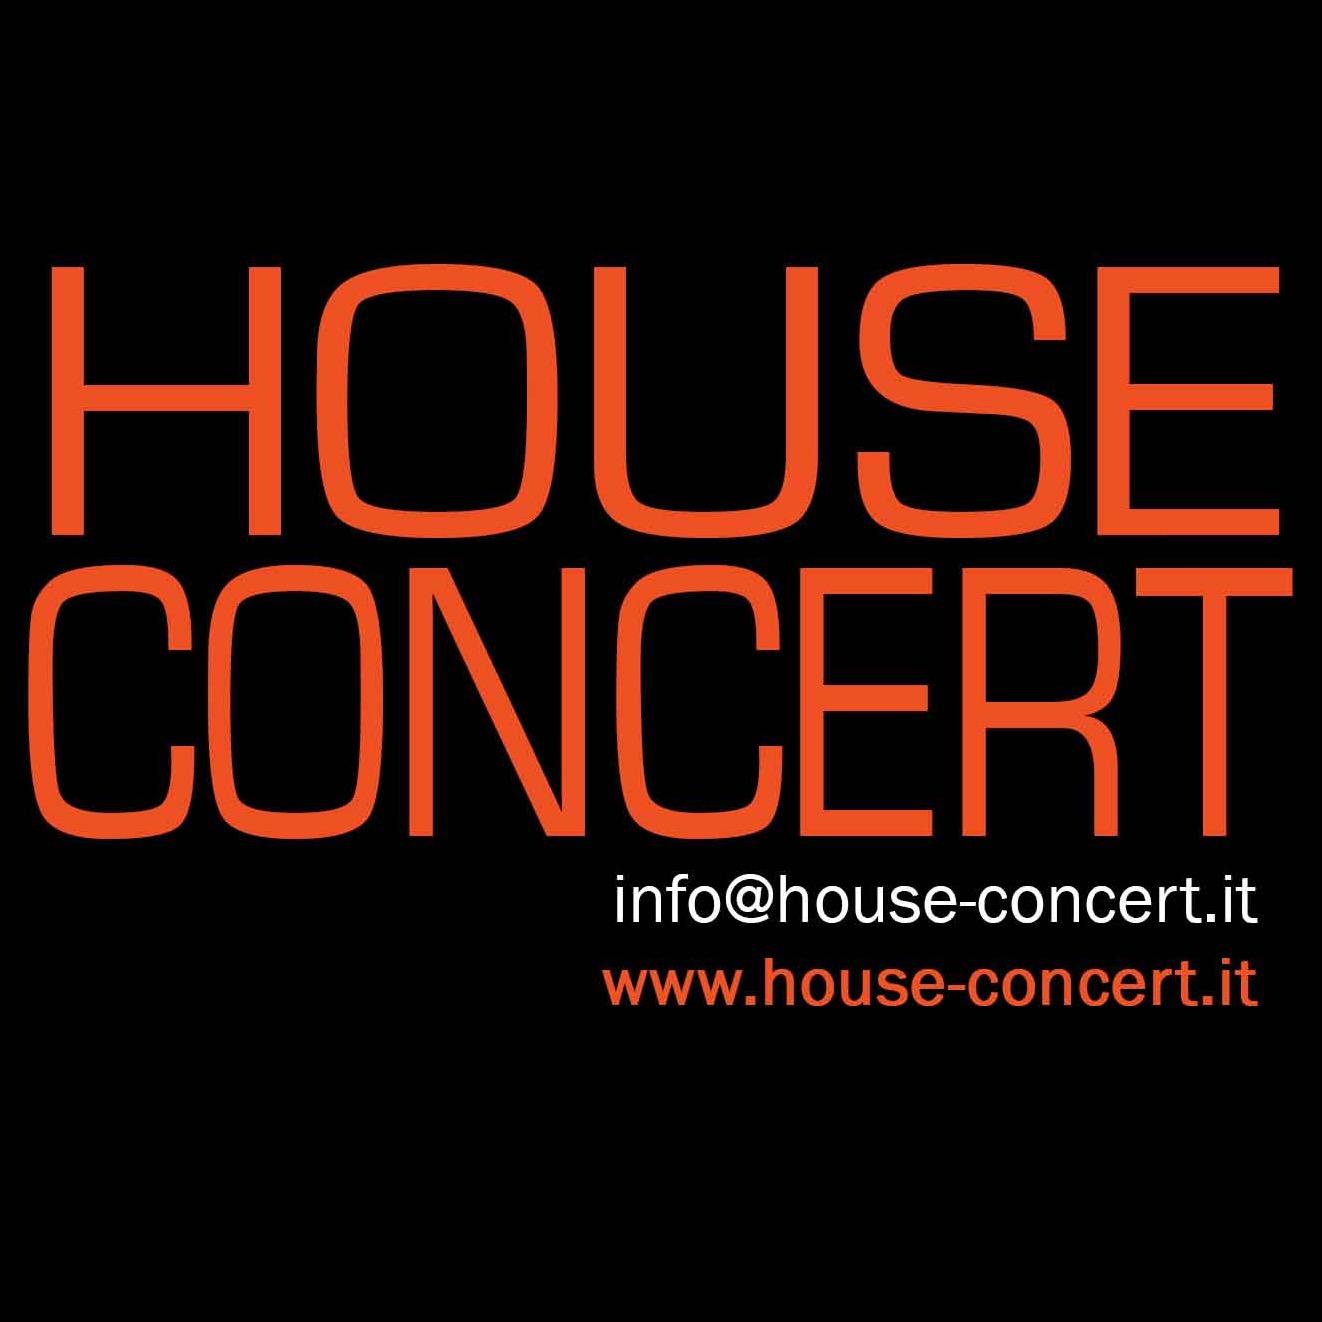 House Concert: concerti e reading in spazi privati. Inviate una mail a info@house-concert.it per scoprire di cosa si tratta!